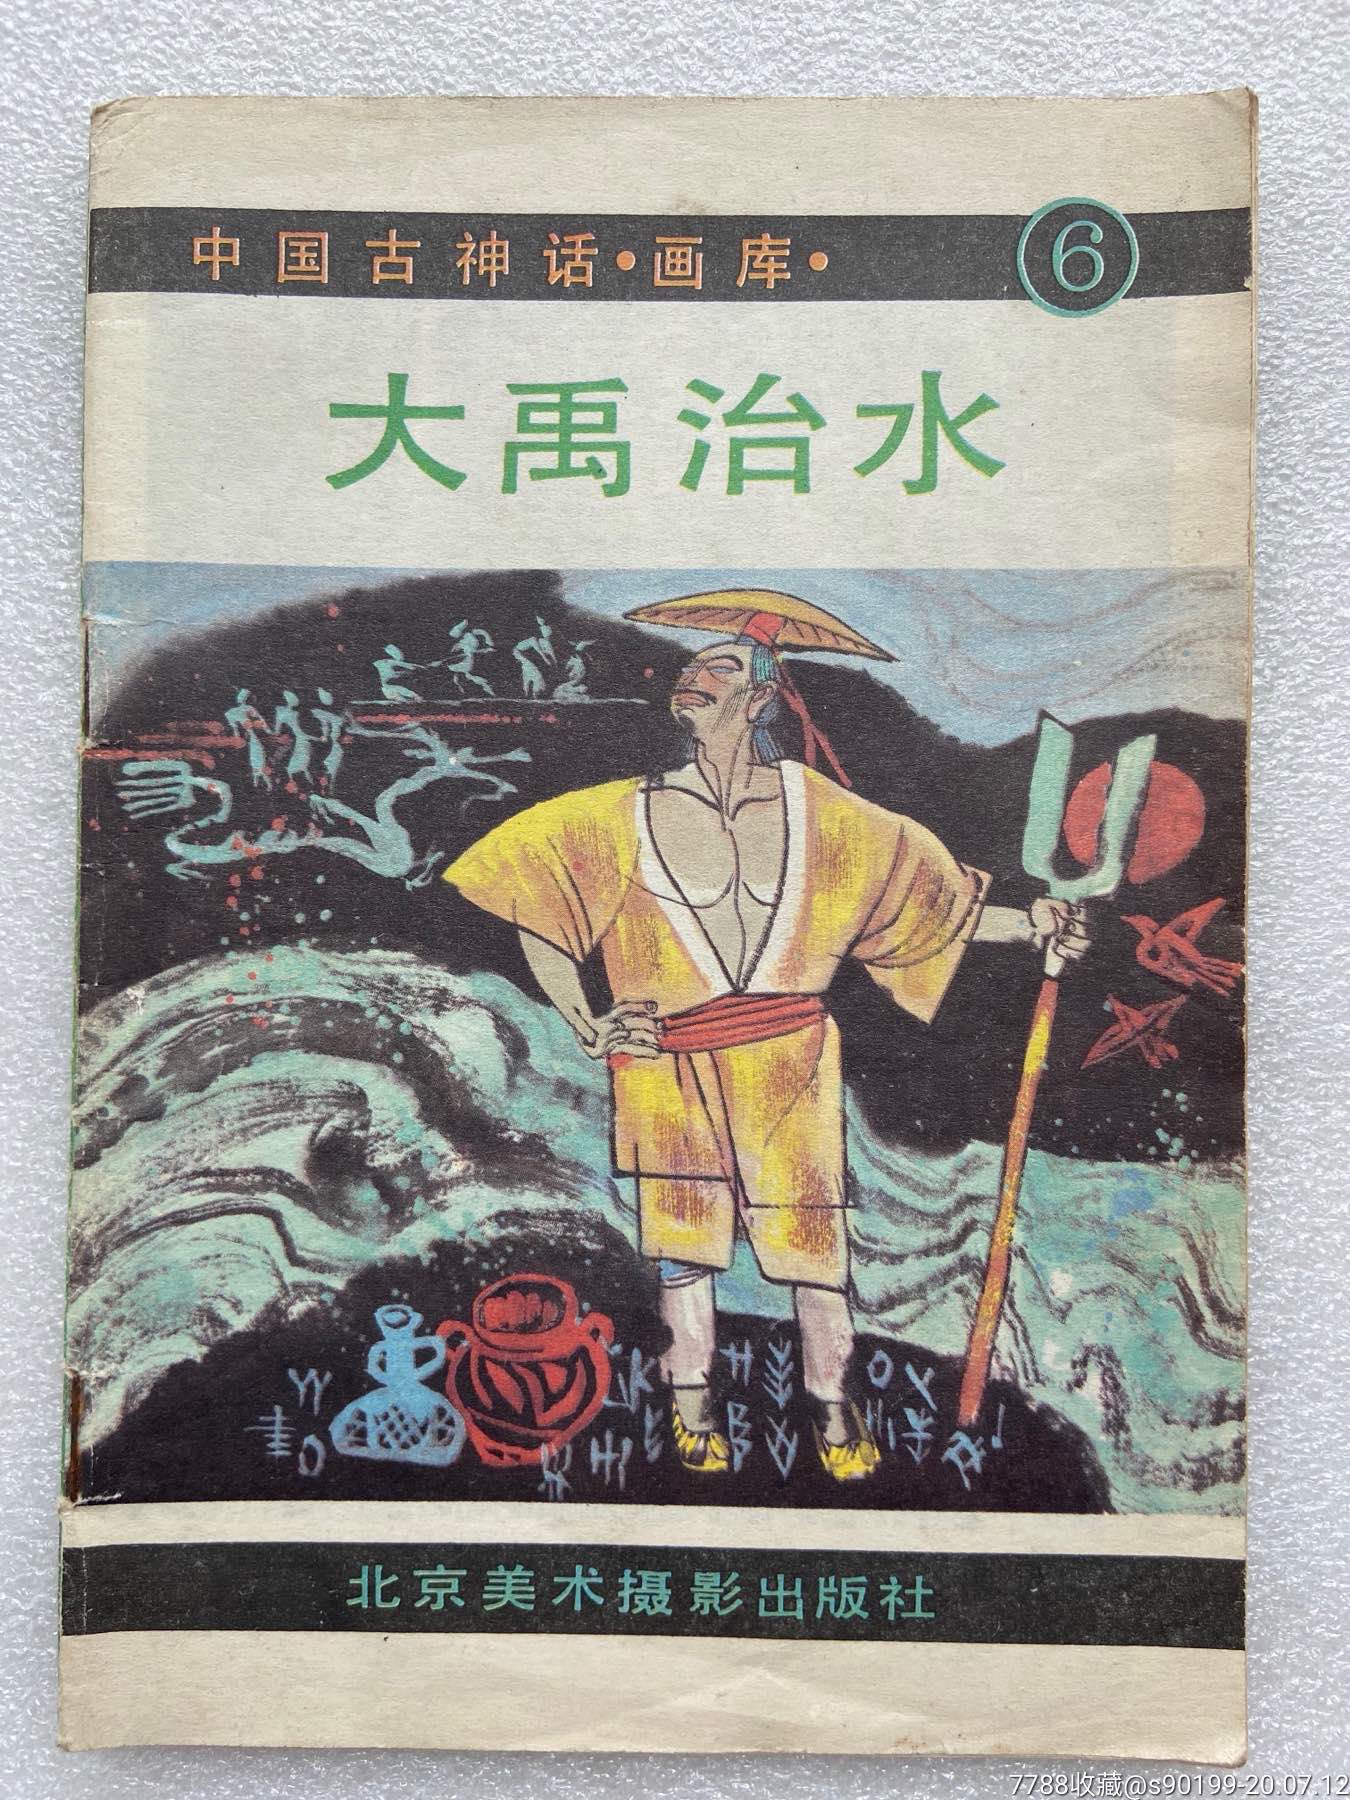 大禹治水中国古神话画库印量2690册